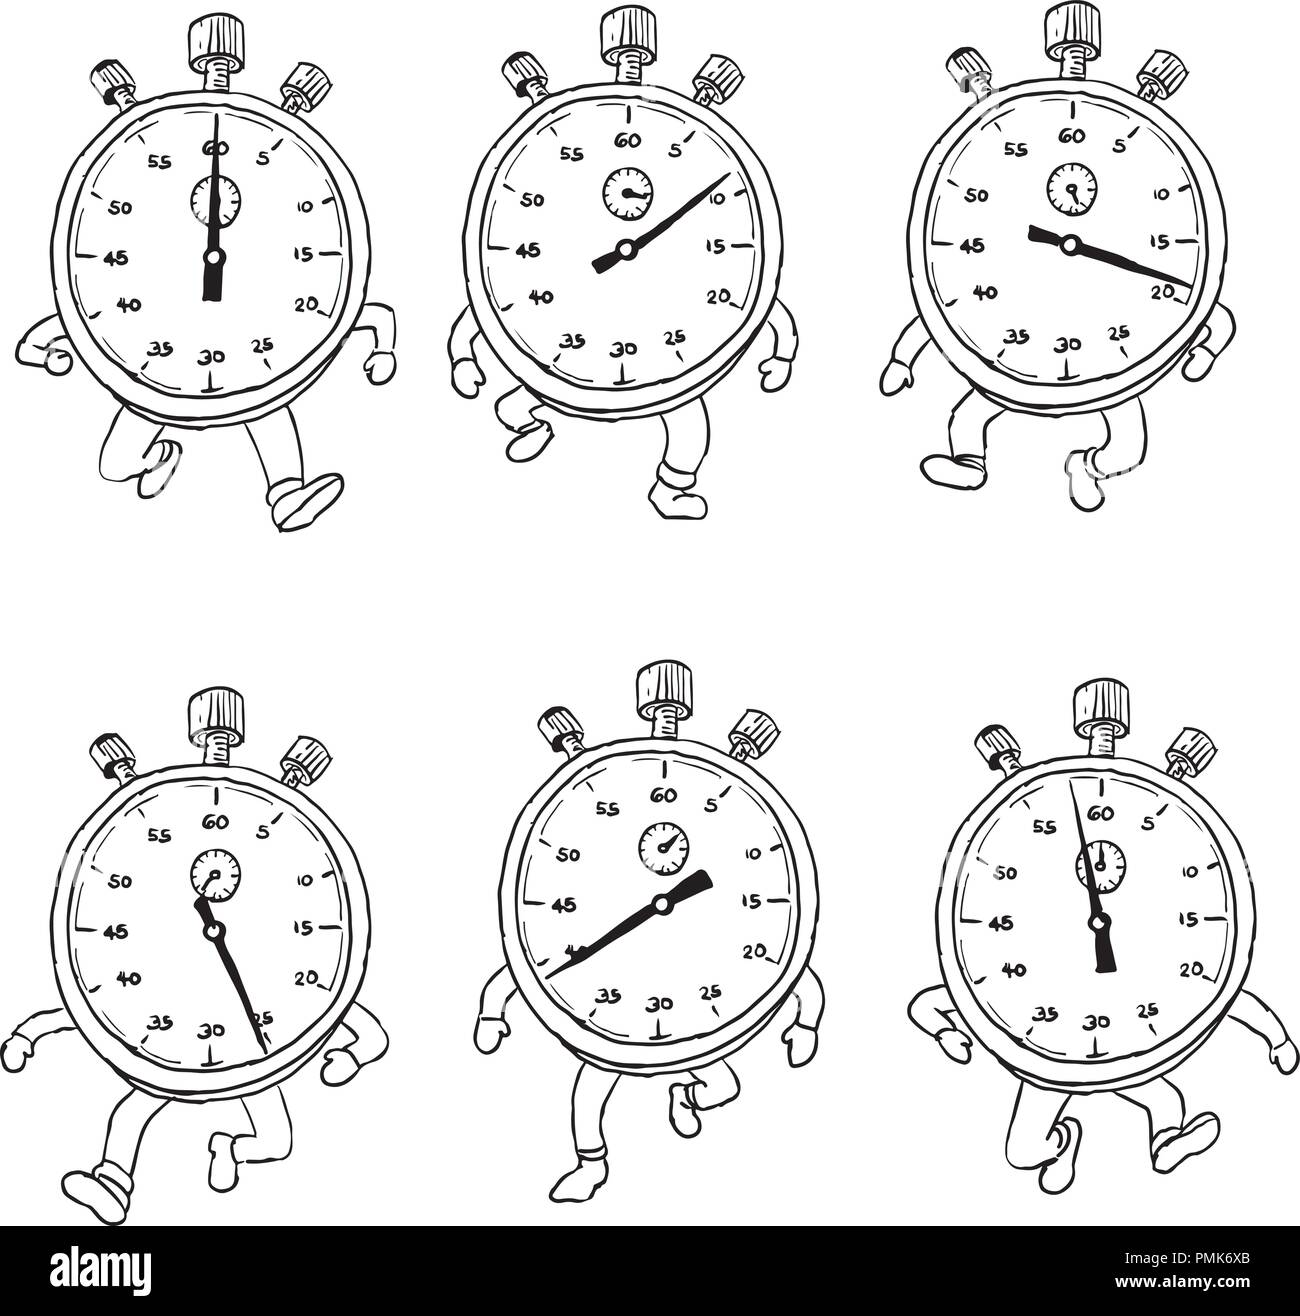 Croquis dessin illustration de style d'une séquence ou d'un cycle d'exécution chronomètre personnage avec jambes tournant vue de l'avant sur des backgrou Illustration de Vecteur